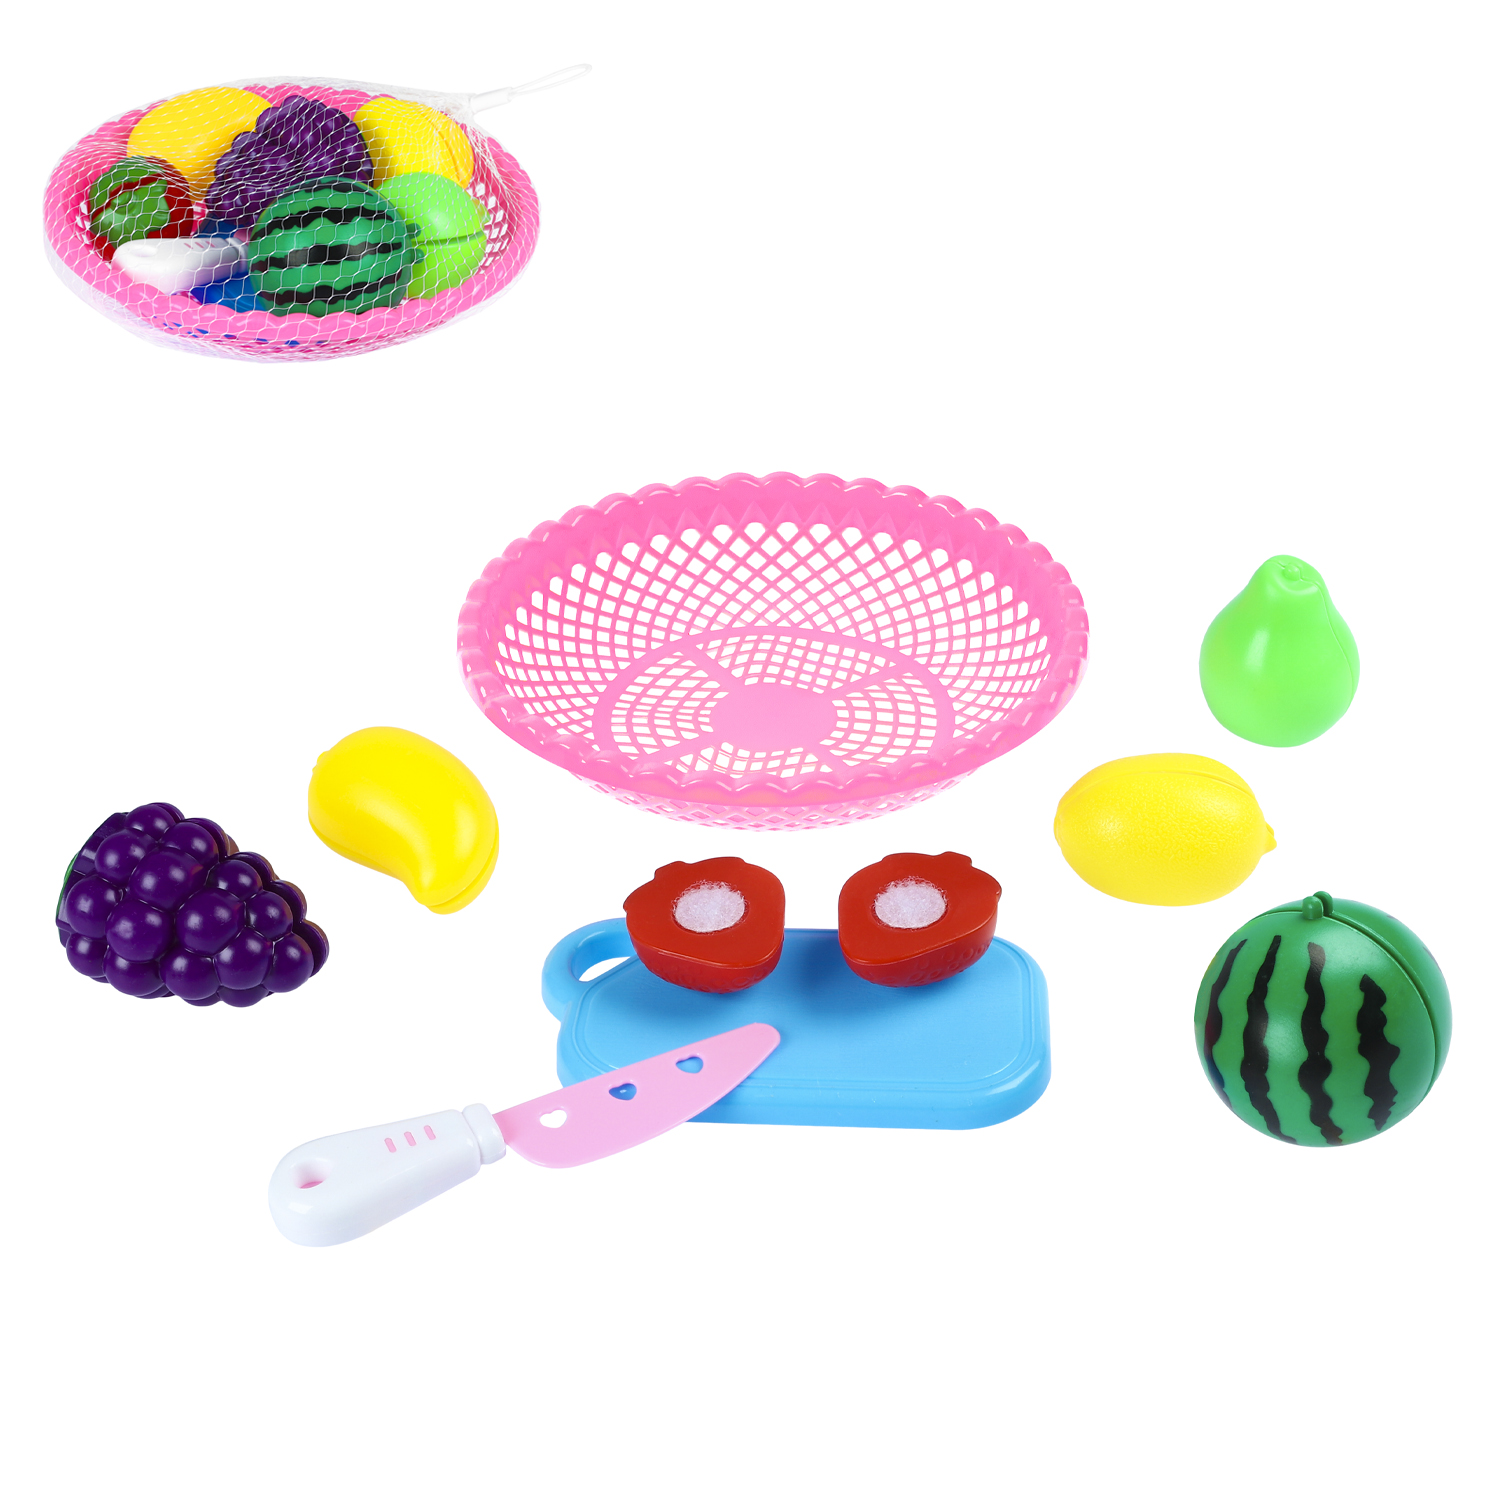 Детский игровой набор продуктов с посудой, JB0211418